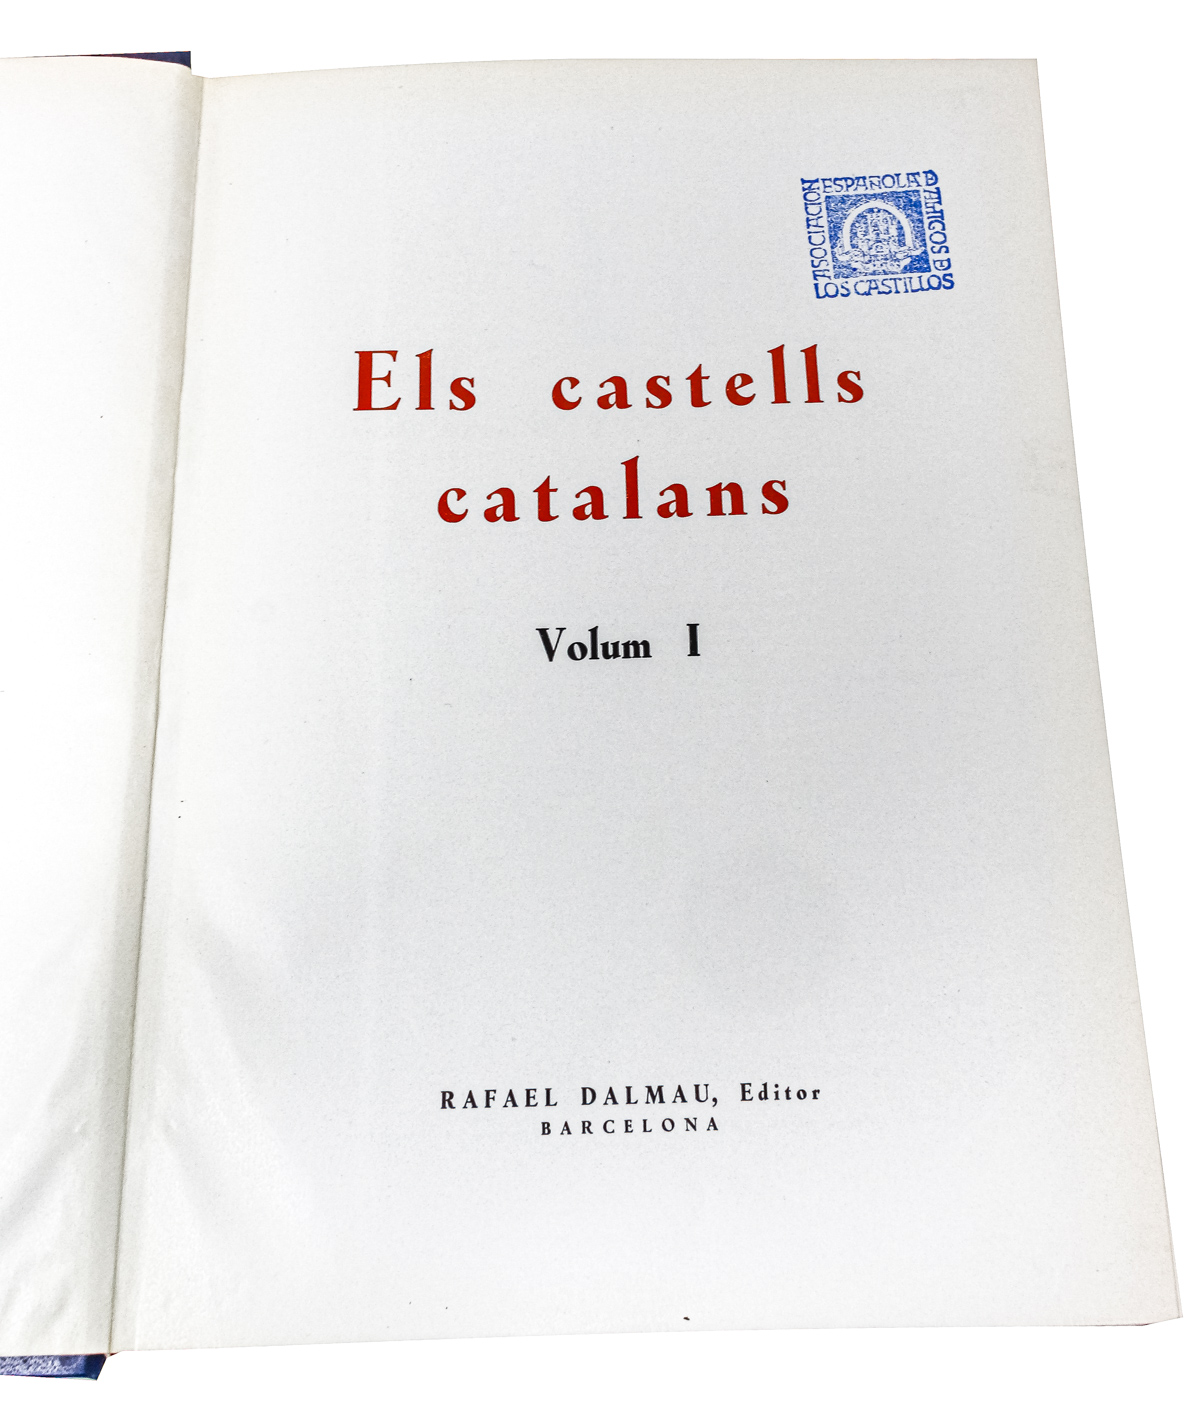 "ELS CASTELLS CATALANS"